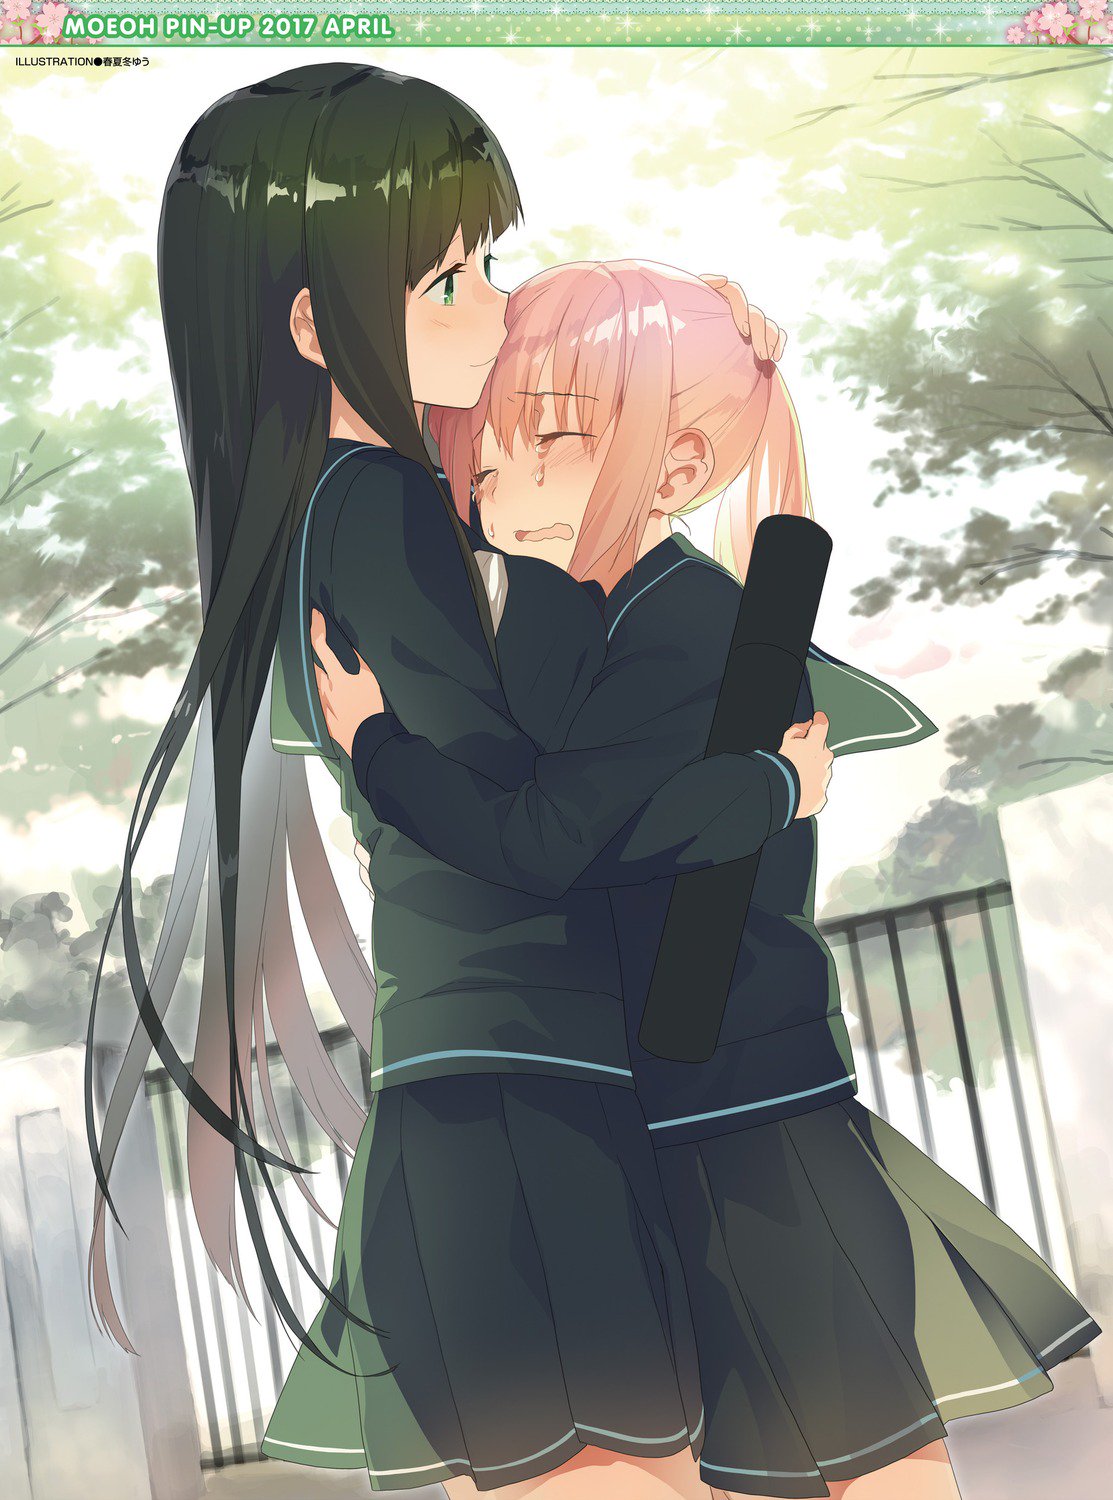 Crying couple hug anime Wallpapers Download | MobCup